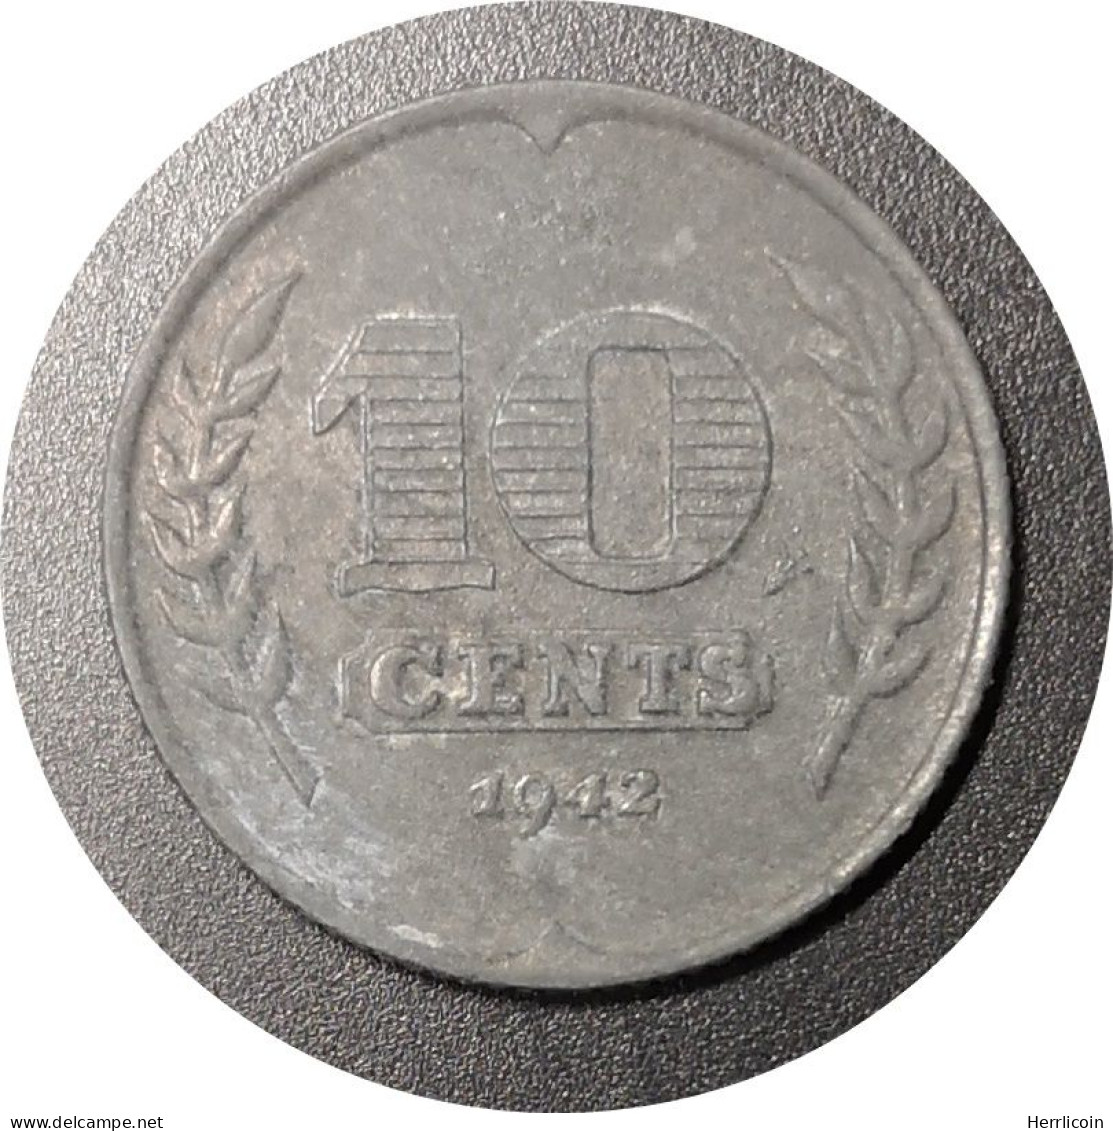 Monnaie Pays-Bas - 1942 - 10 Cents Occupation Allemande - 10 Cent